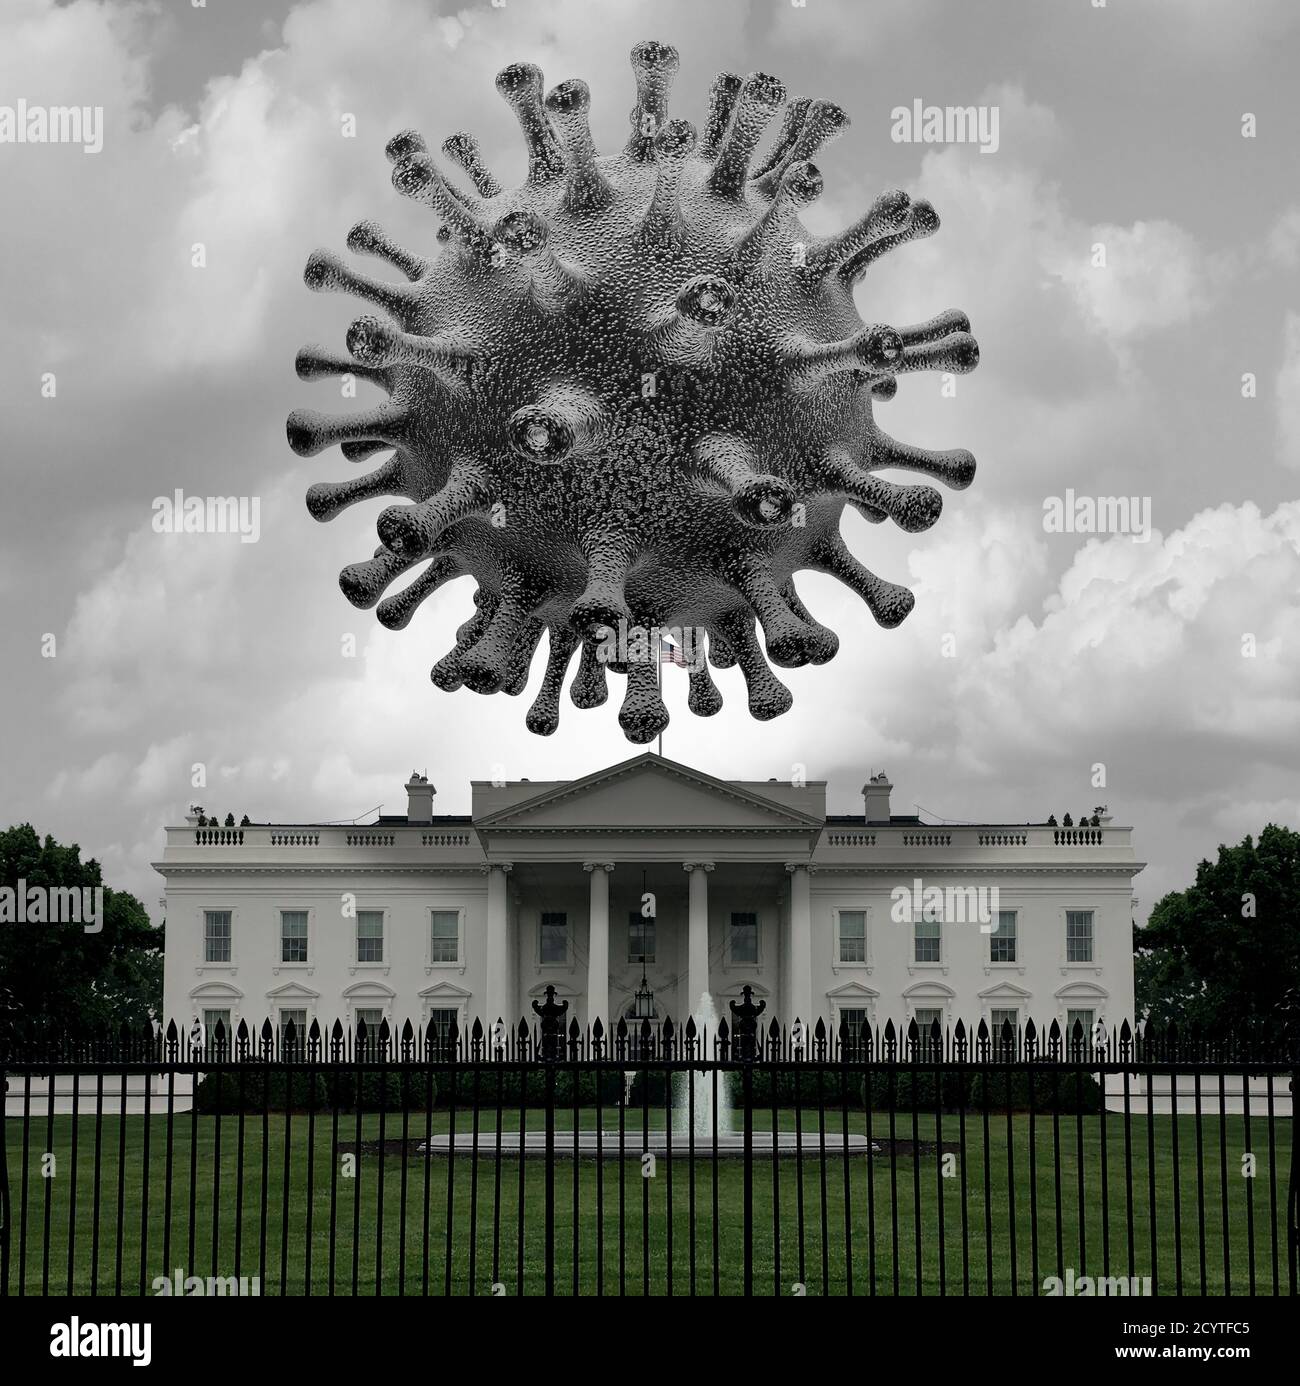 Gesundheit und das Konzept des Weißen Hauses als Risiko für Coronavirus oder Covid-19 und Grippevirus-Gefahr in den Vereinigten Staaten als Gesundheitsgesetz und -Politik. Stockfoto